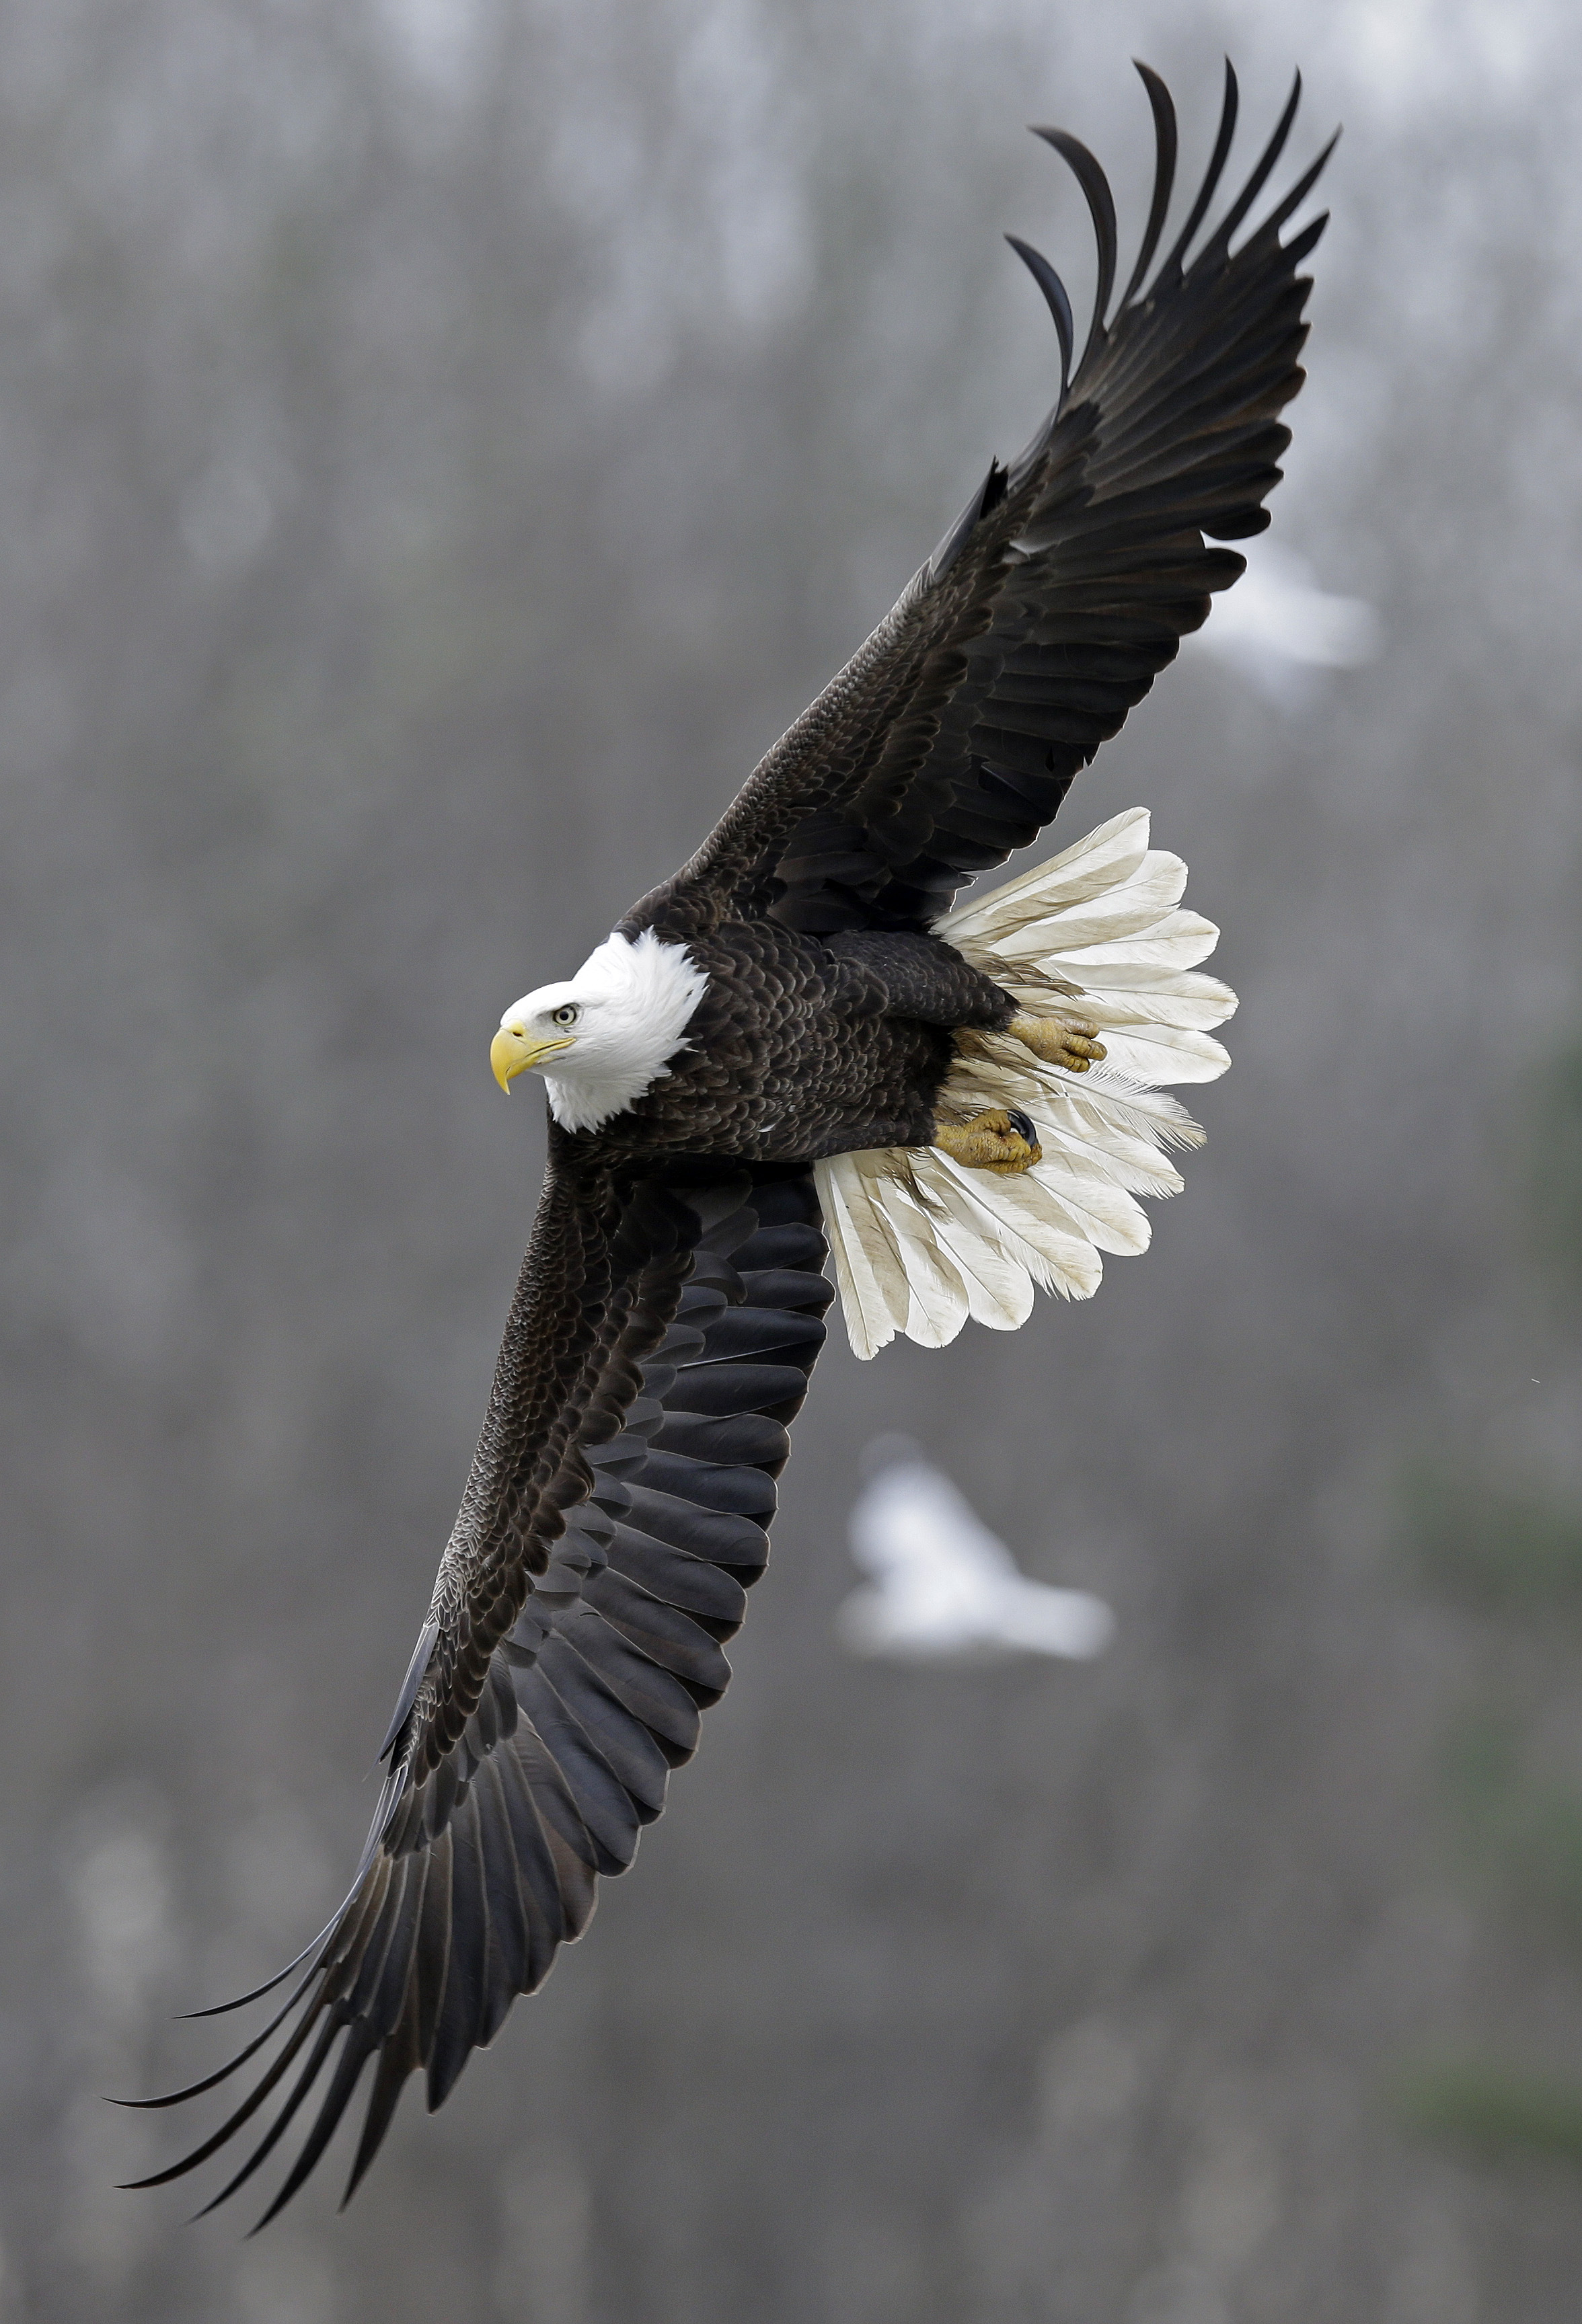 Bald eagles winter at North Carolina lake - The Blade